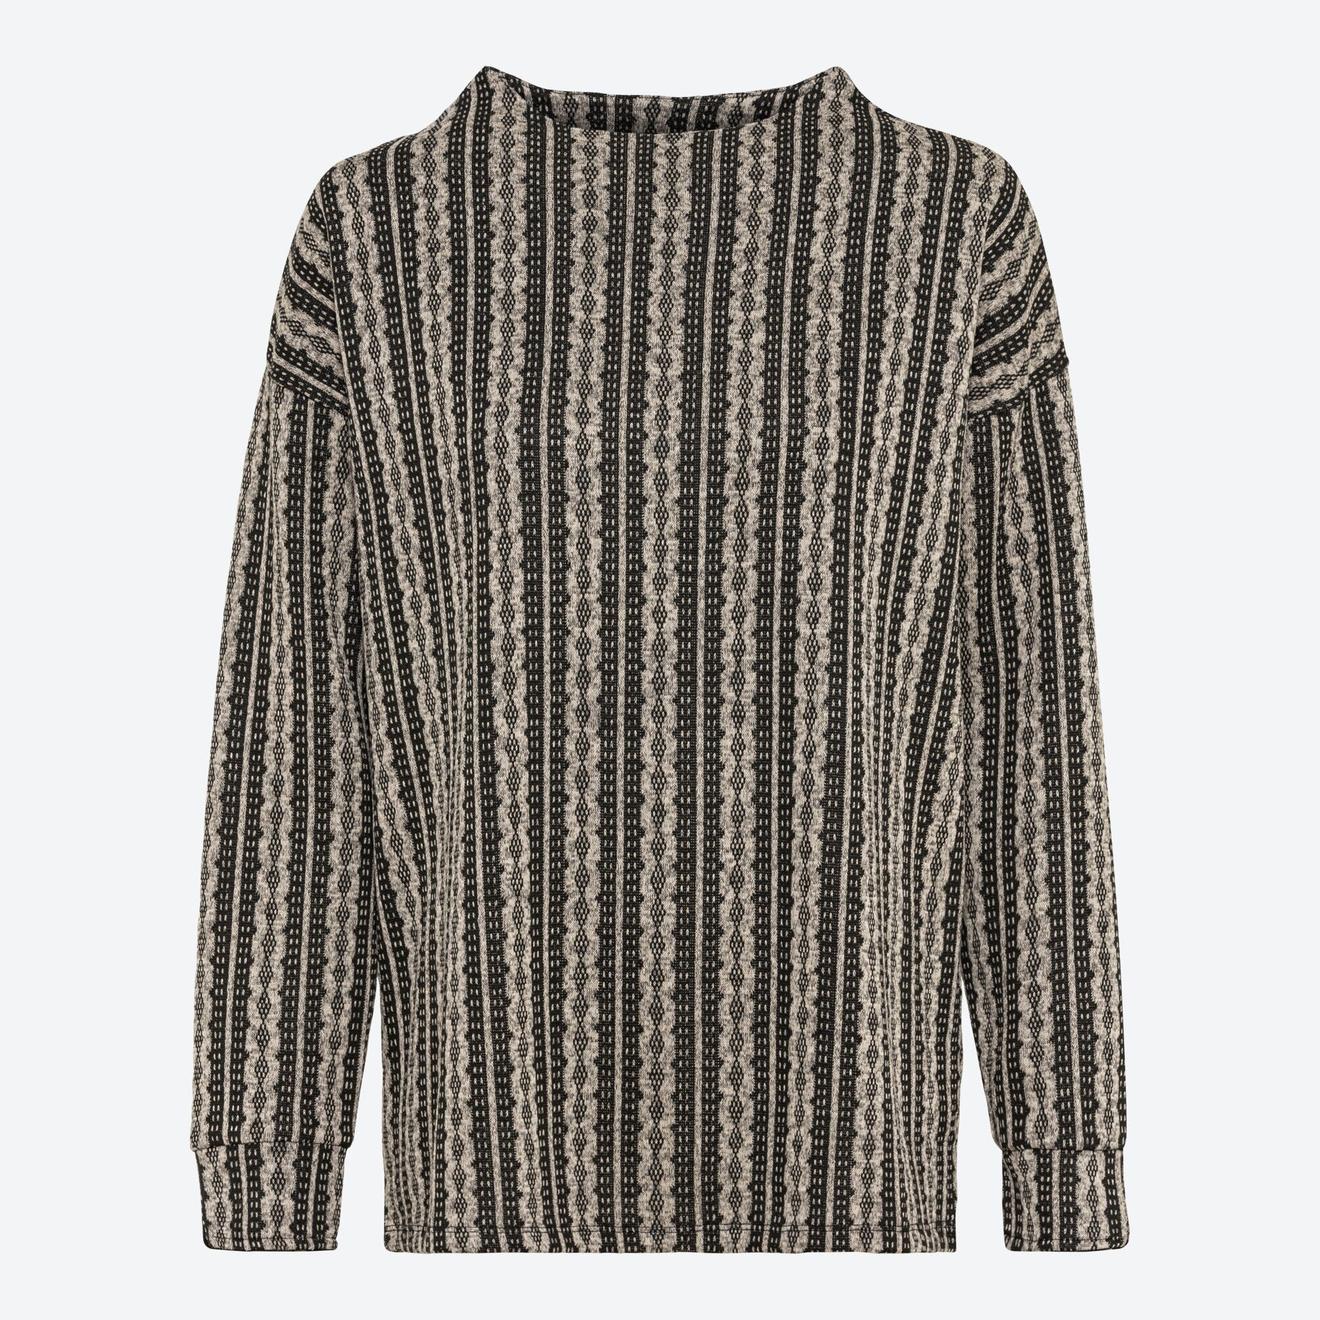 Damen-Pullover mit Viskose für 7,99€ in NKD